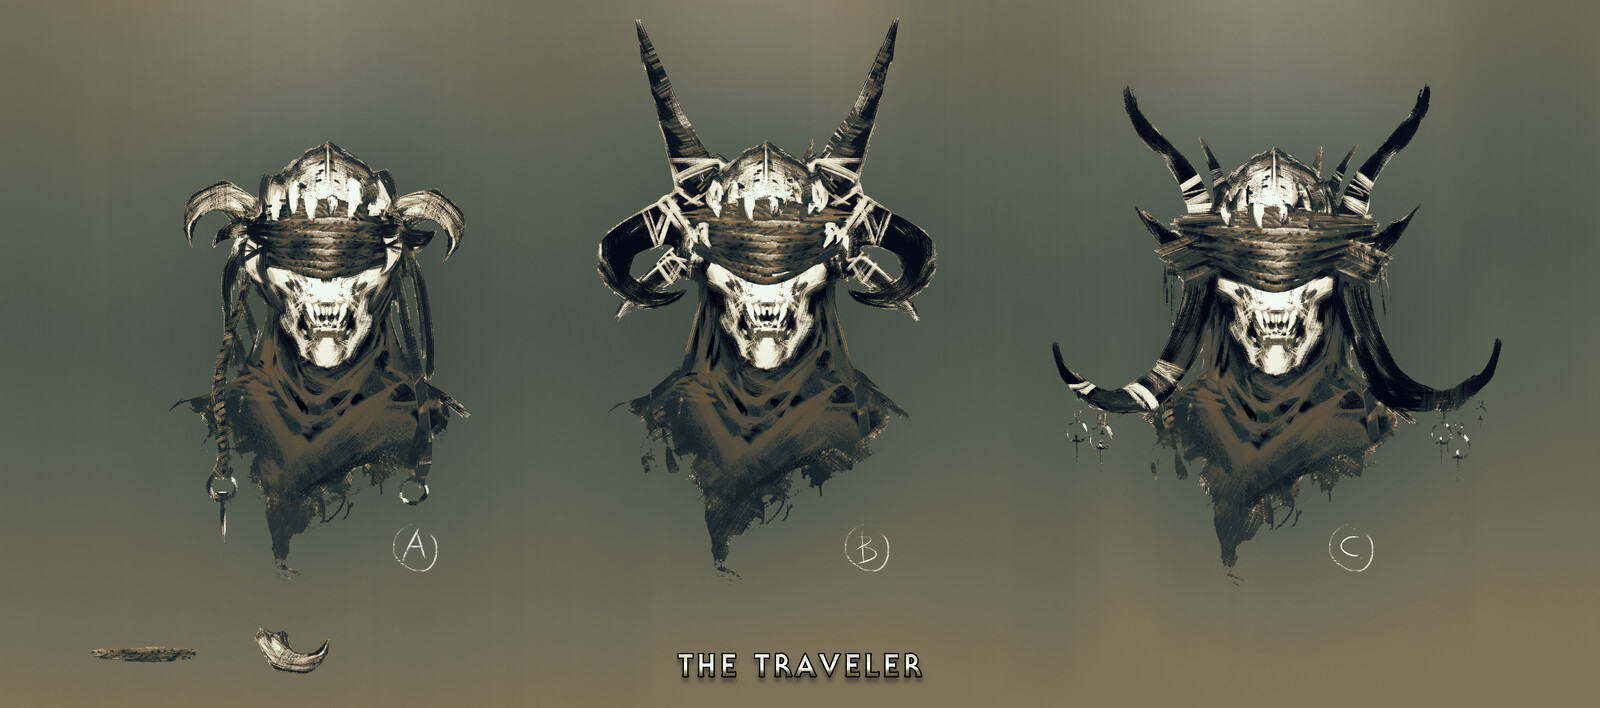 The Traveler - Creature Design